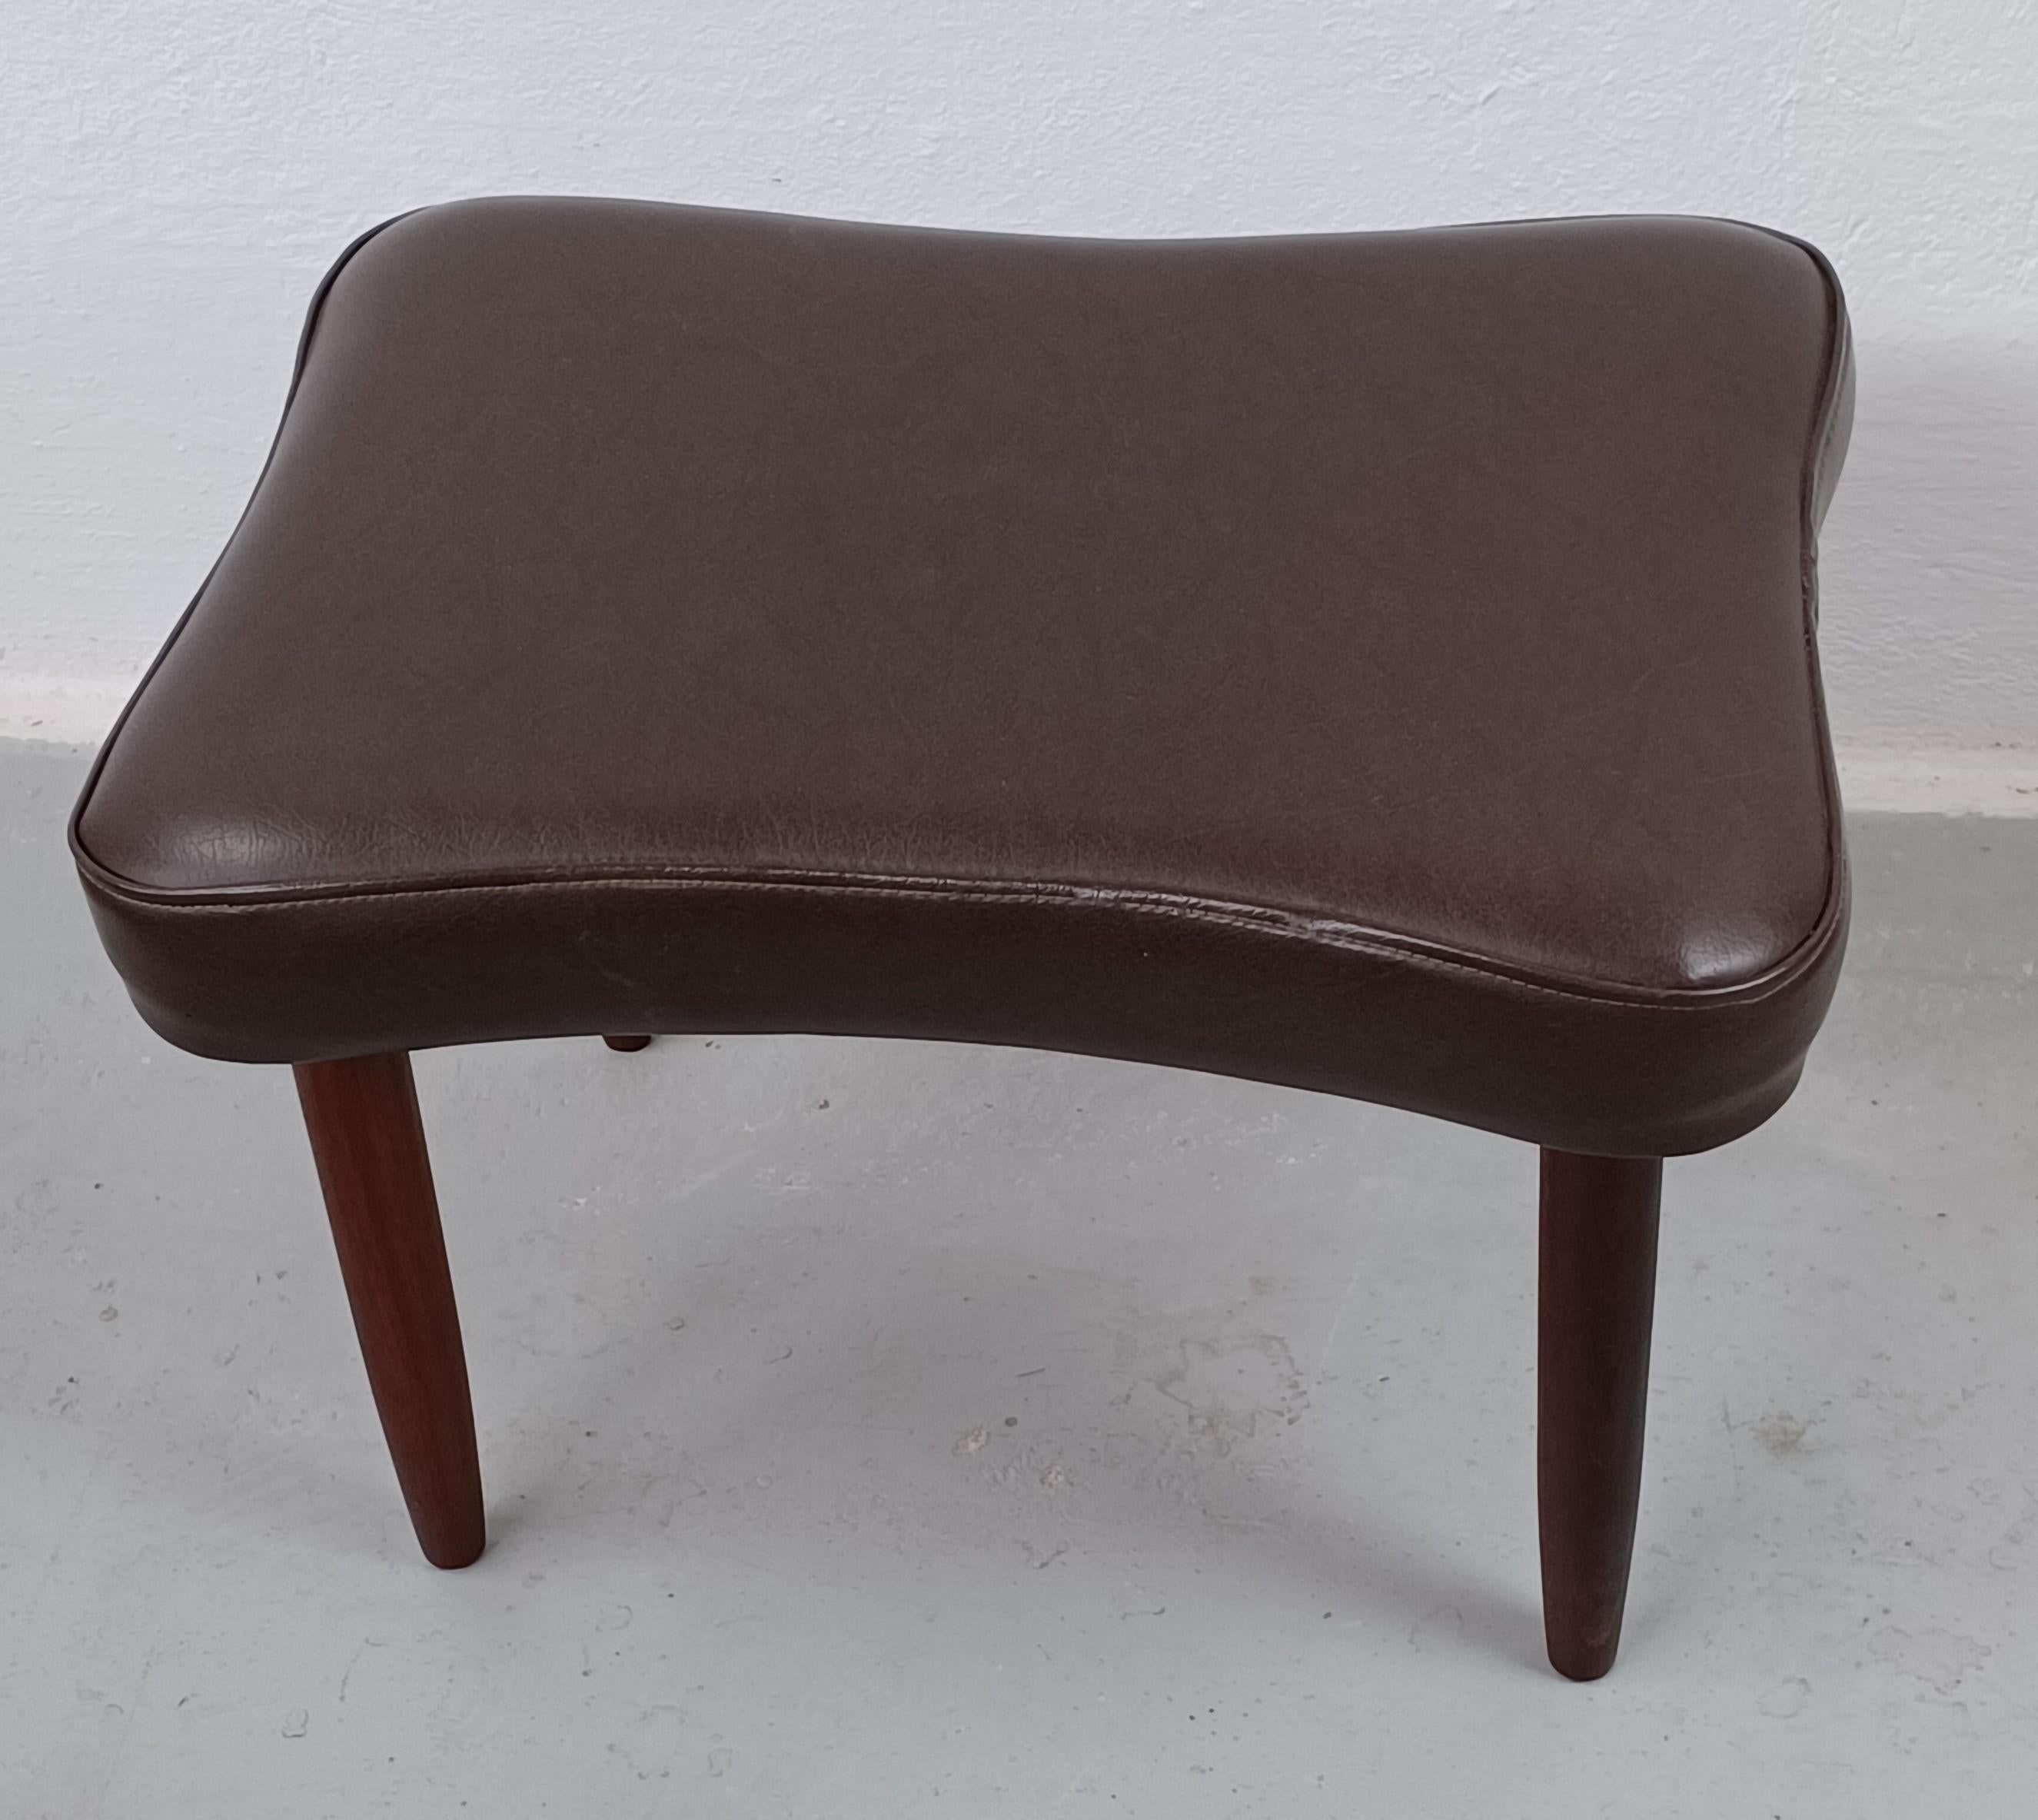 Tabouret danois des années 1960 en teck et faux cuir fabriqué par Capri

Tabouret danois du milieu du siècle avec une élégante assise de forme organique tapissée en faux cuir marron et des pieds en teck massif.

Le pouf est en bon état vintage et a